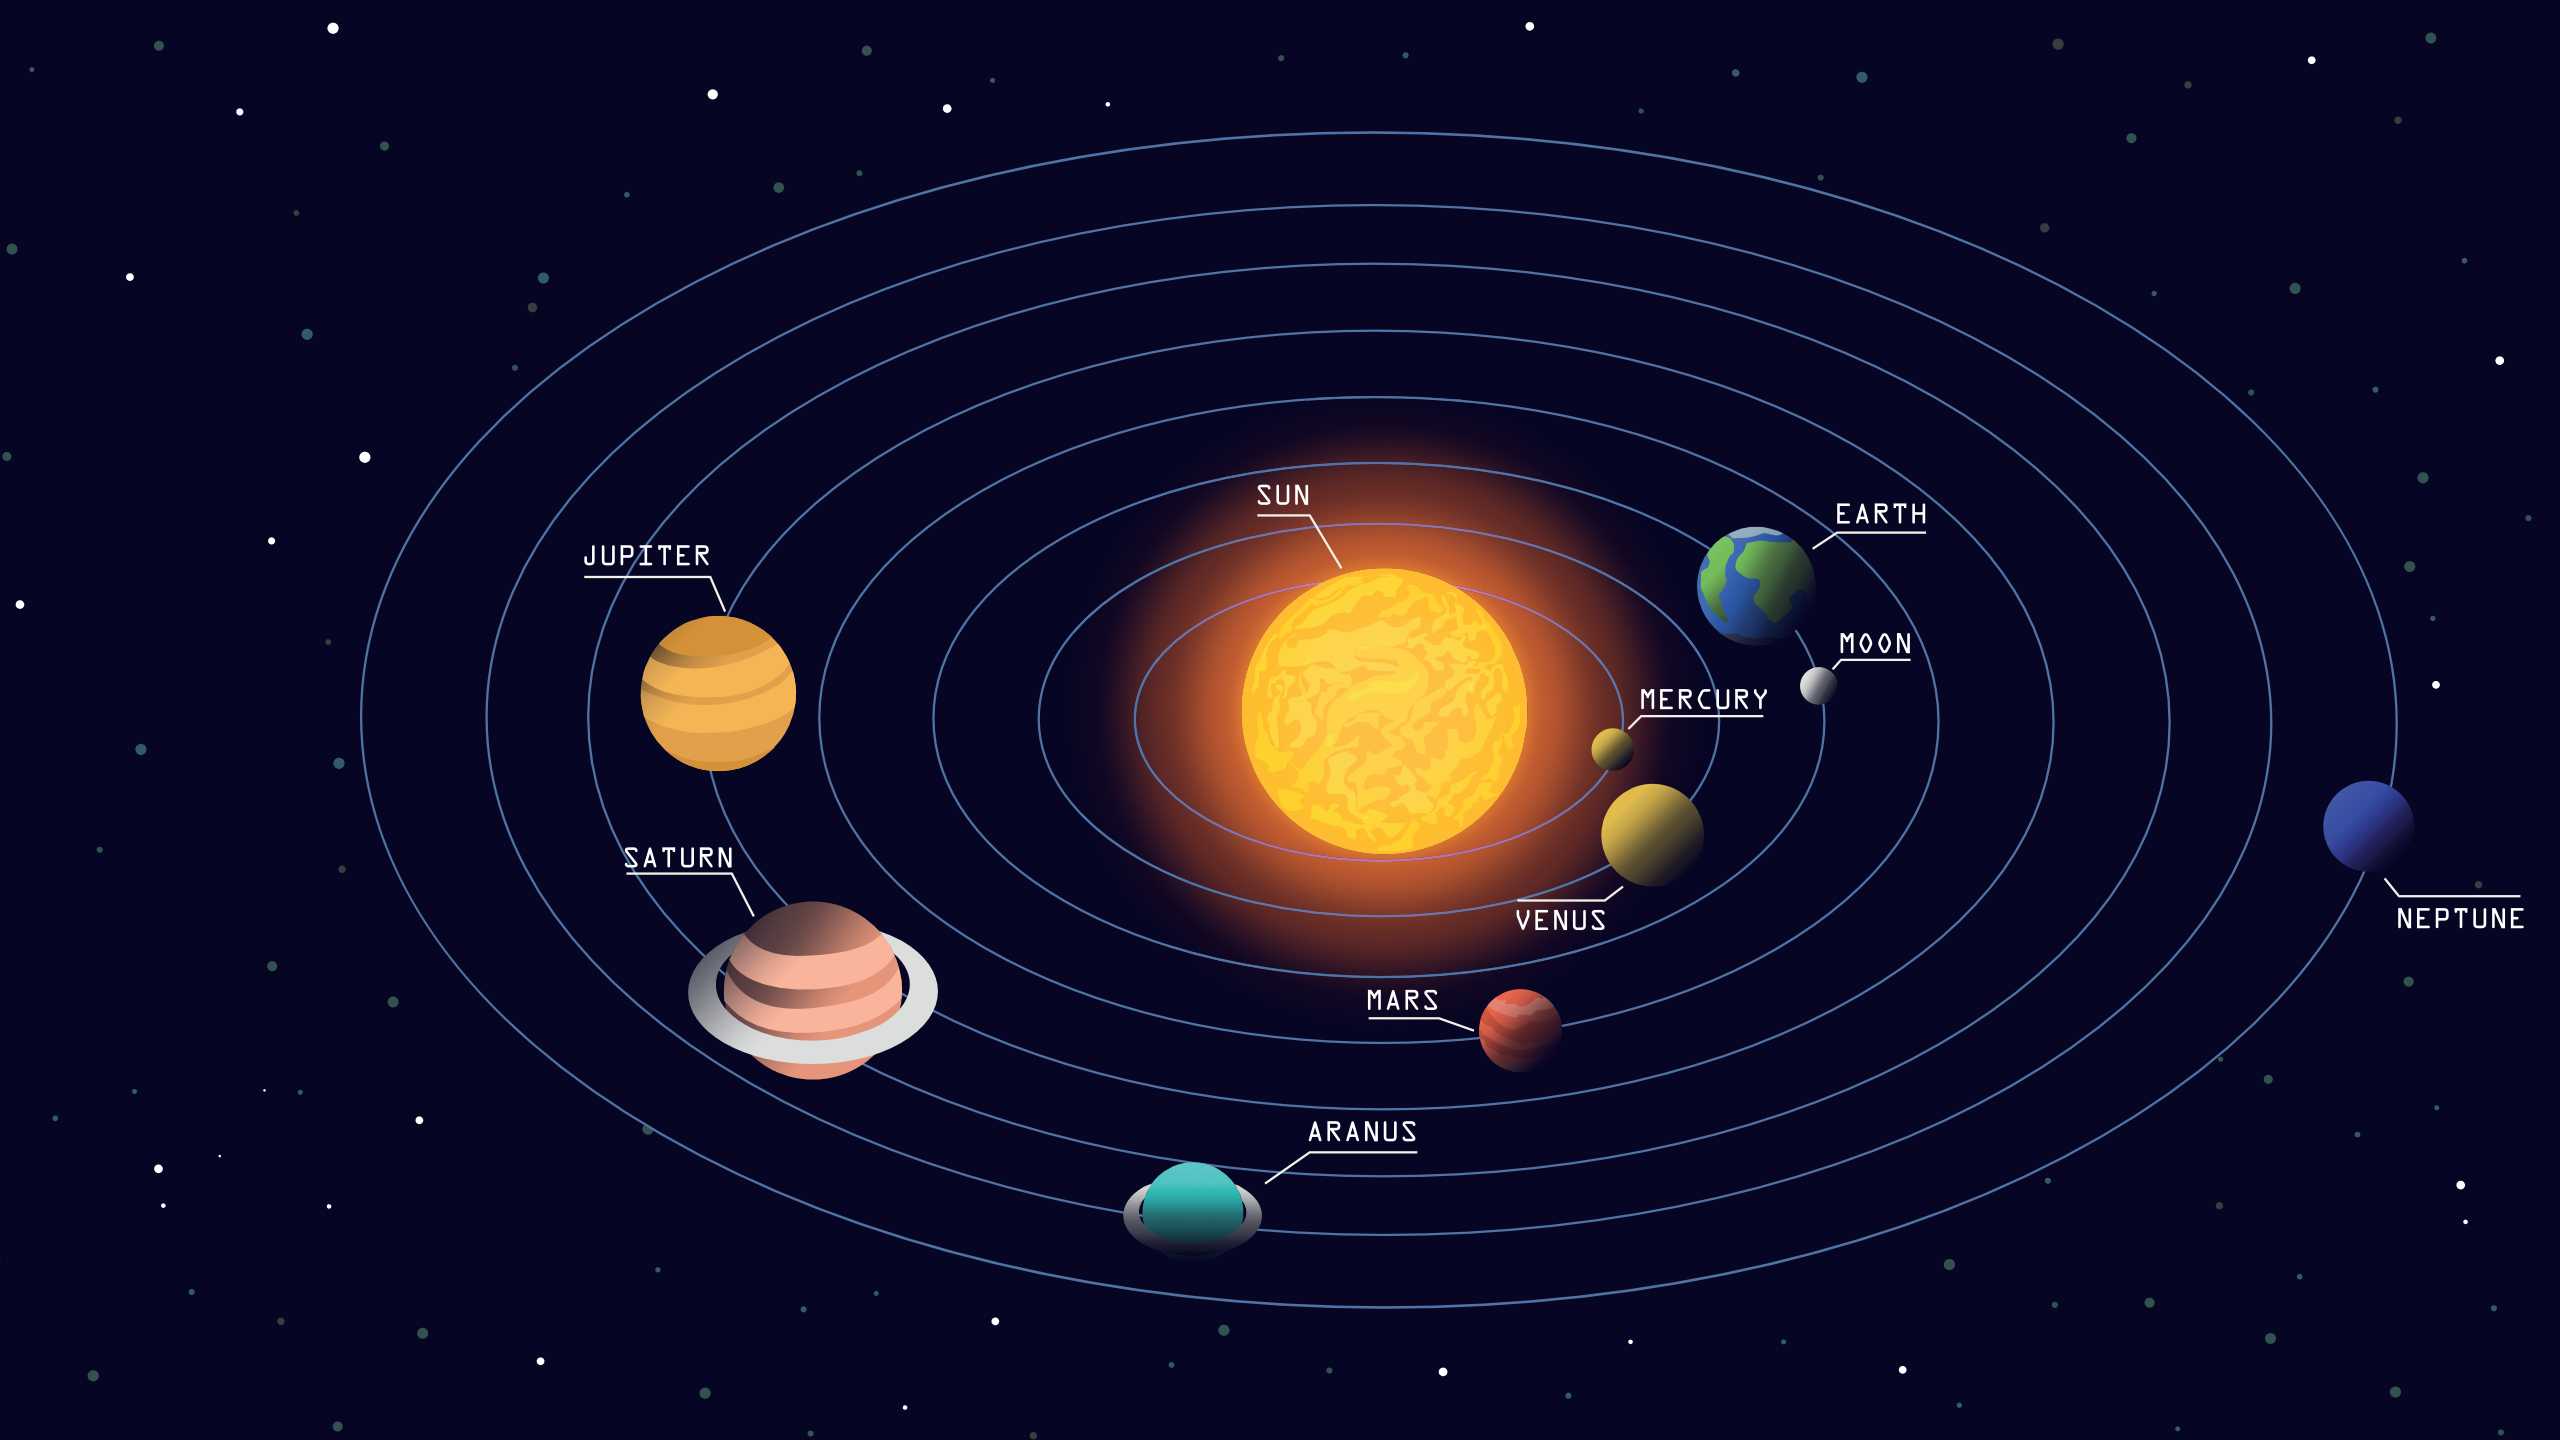 Geo. строение солнечной системы. солнце, планеты земной группы, пояса астероидов, планеты-гиганты, пояс койпера, рассеянный диск, облако оорта